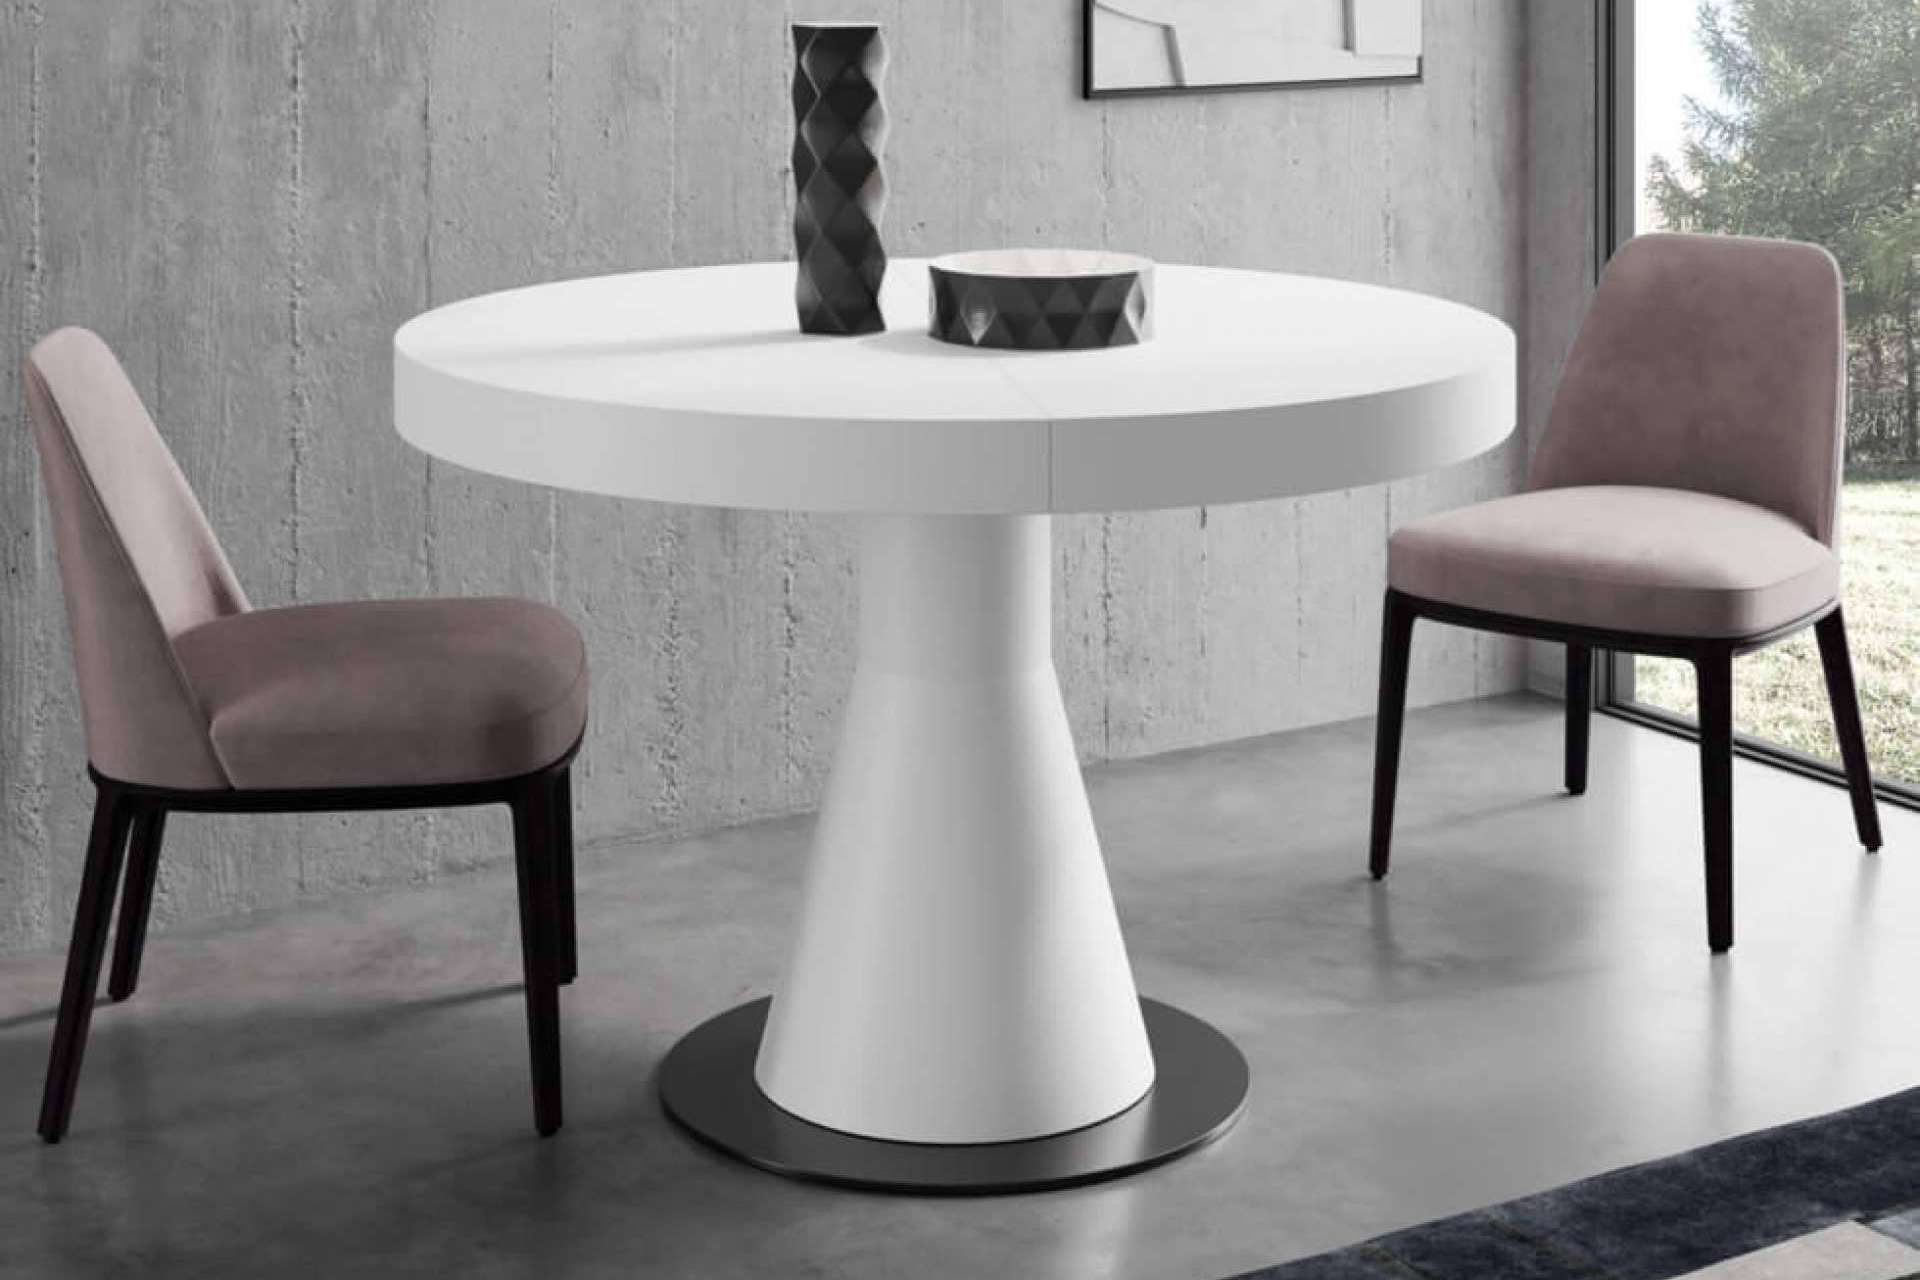 Home and Relax acerca de la funcionalidad y elegancia de las mesas extensibles